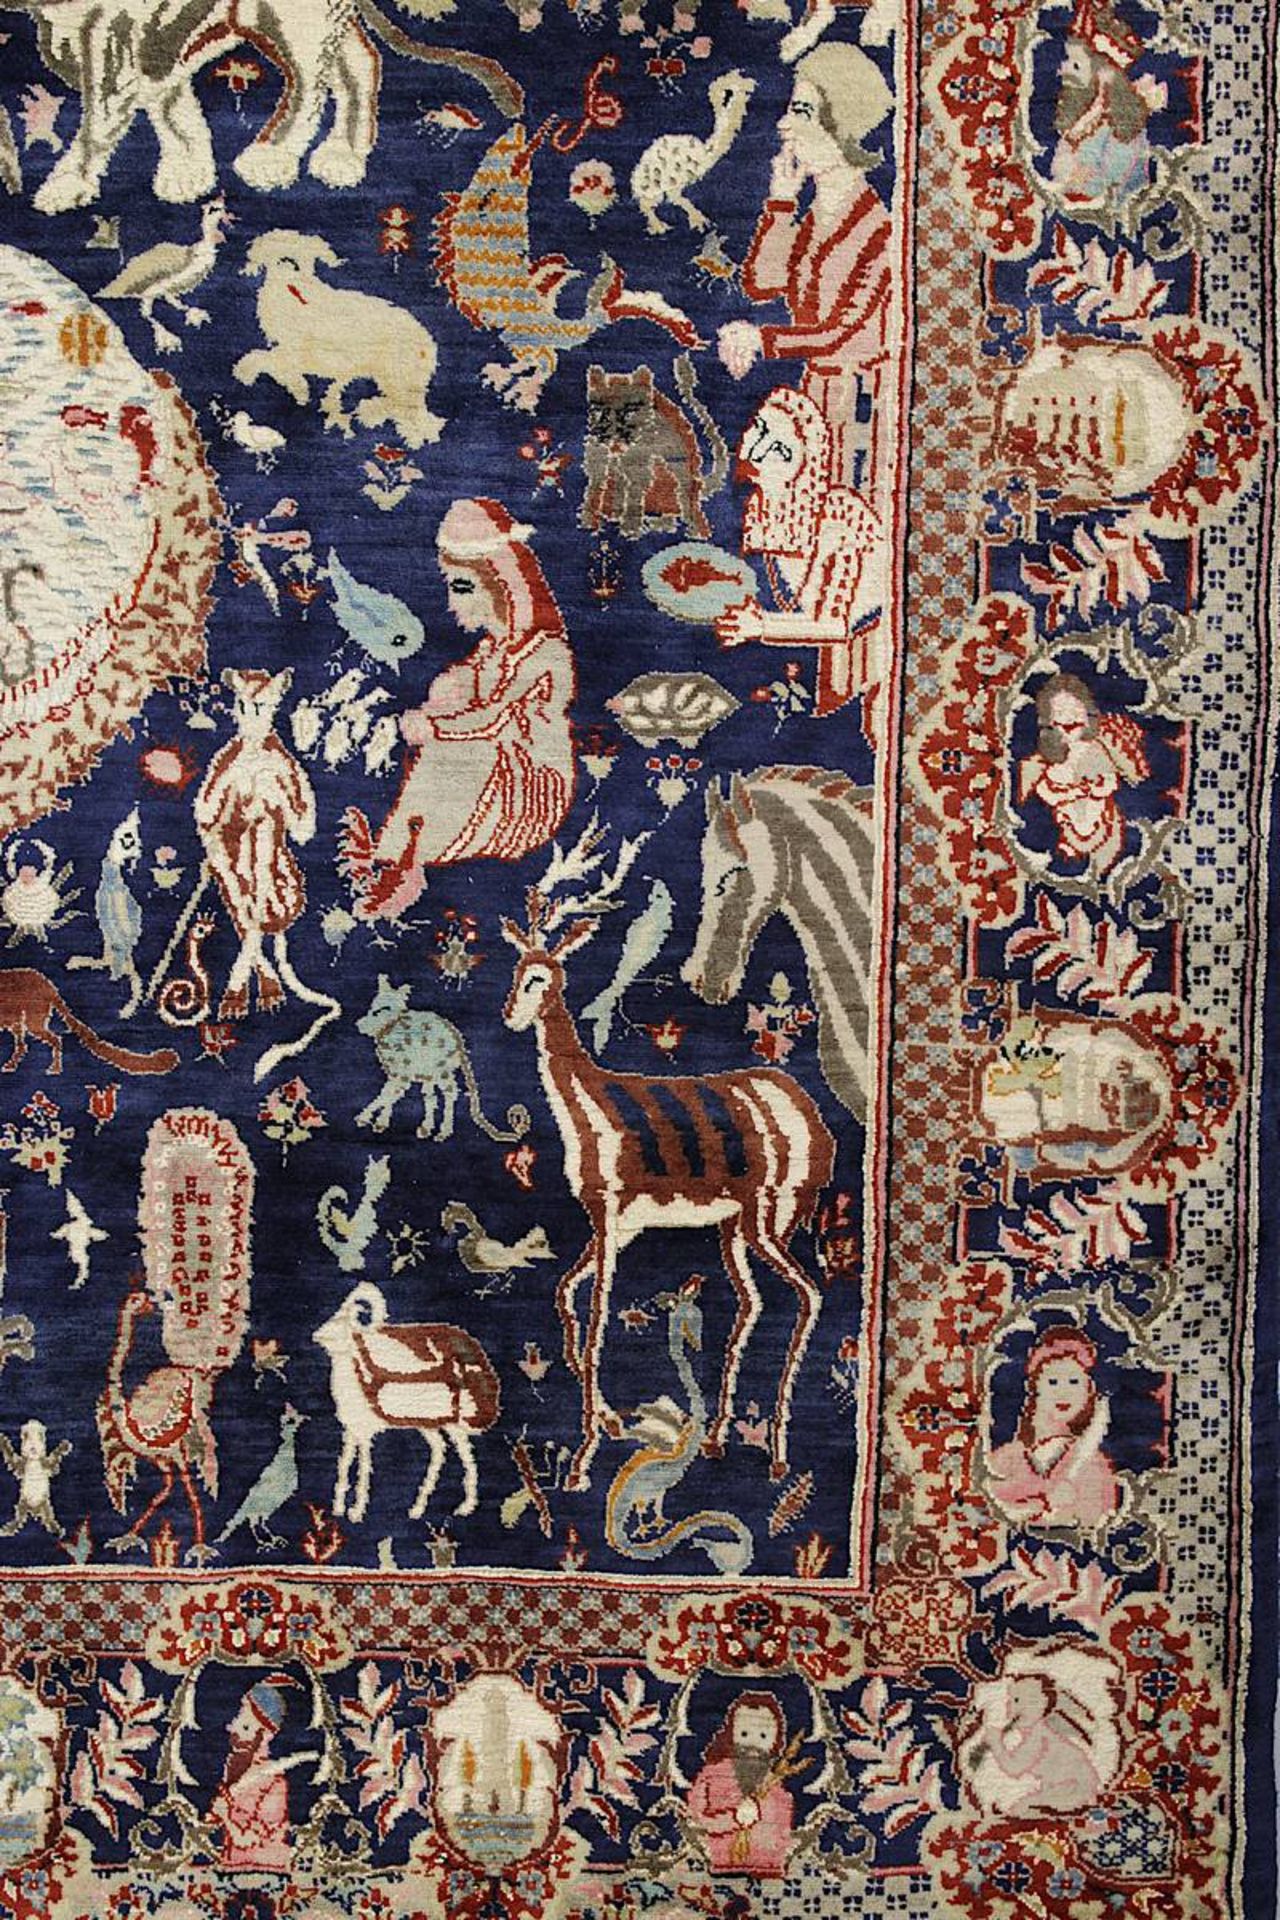 Aufwendiger detailreicher Figurenteppich, Kaschmar, Persien 2. H. 20. Jh., mit Paradiesmotiven u. - Image 10 of 14